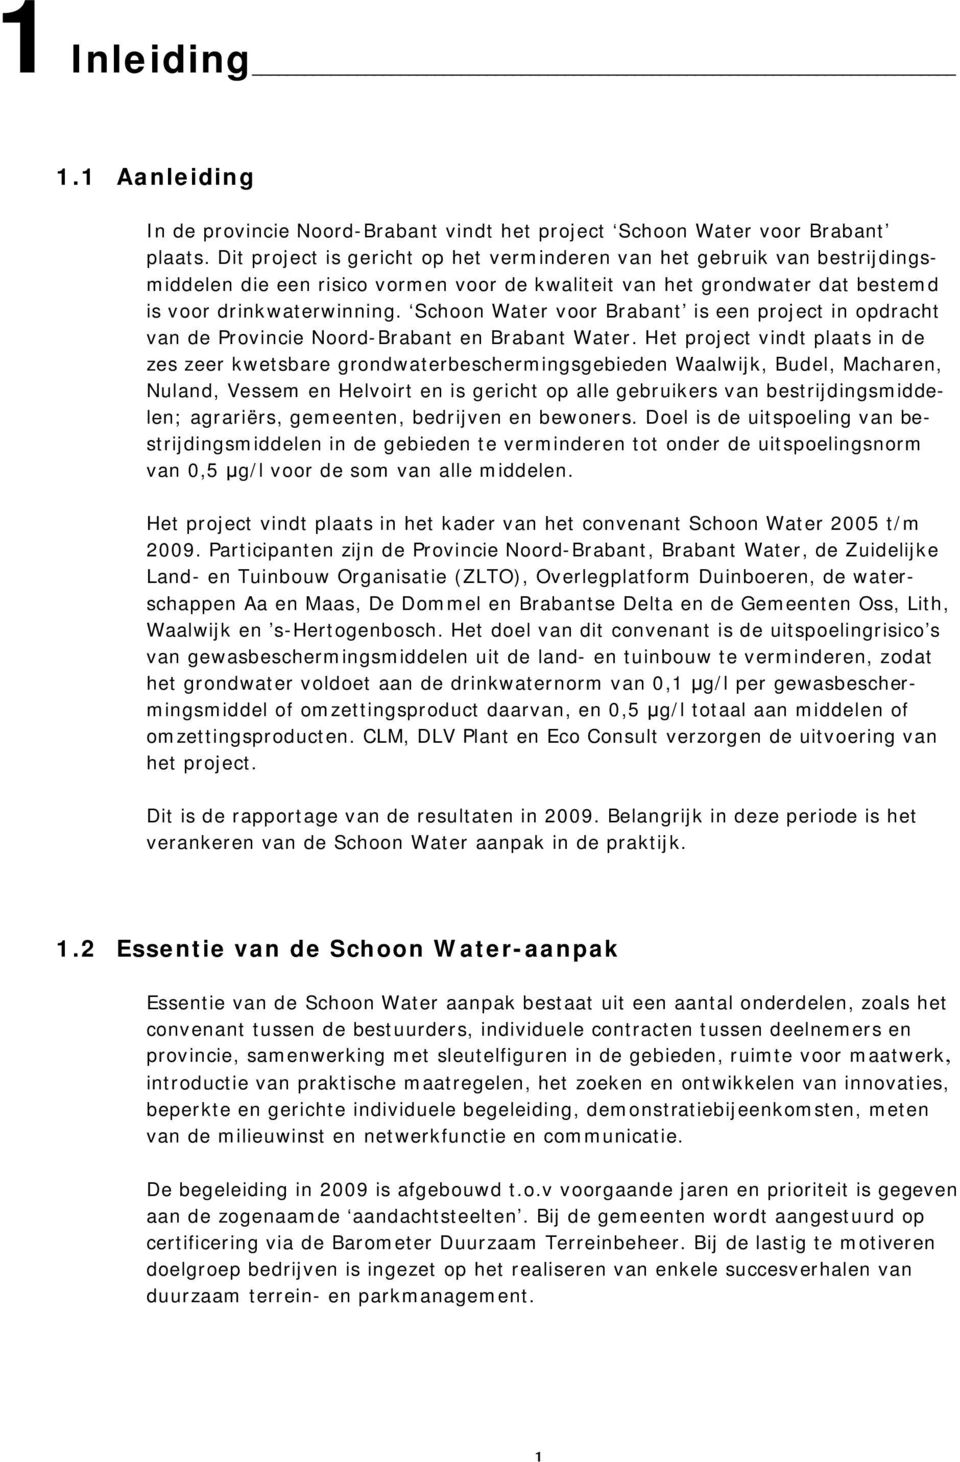 Schoon Water voor Brabant is een project in opdracht van de Provincie Noord-Brabant en Brabant Water.